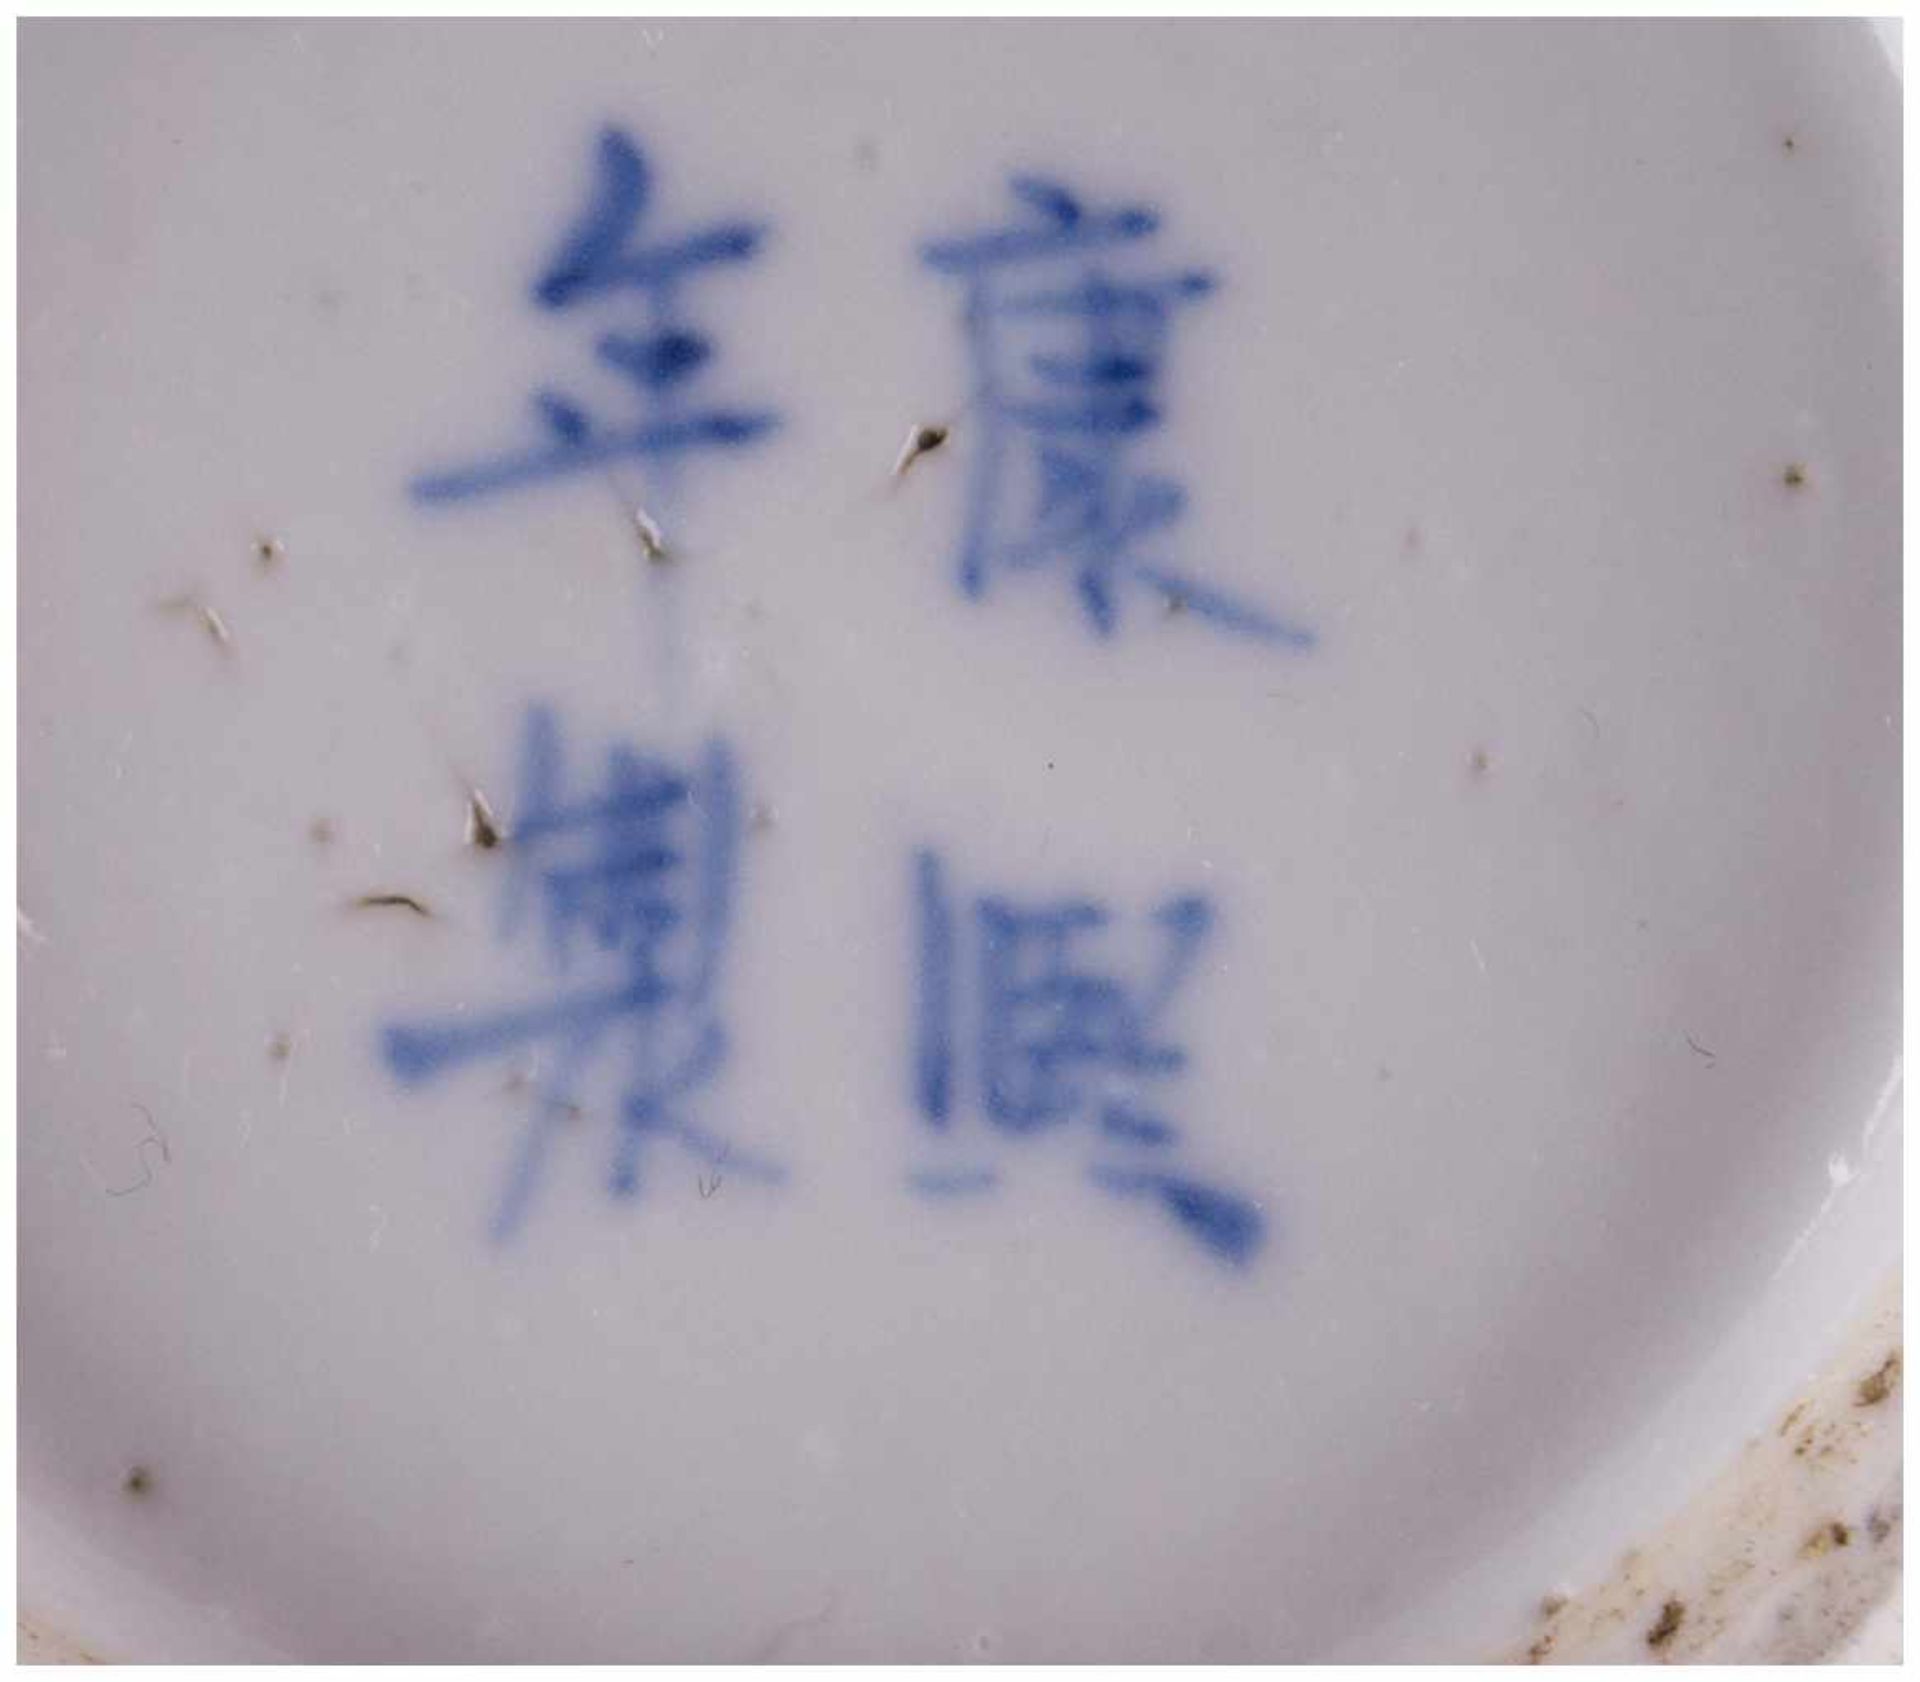 Stangenvase China 19./20. Jhd. / Vase, China 19th/20th century - Blau-weiß Malerei [...] - Bild 10 aus 10